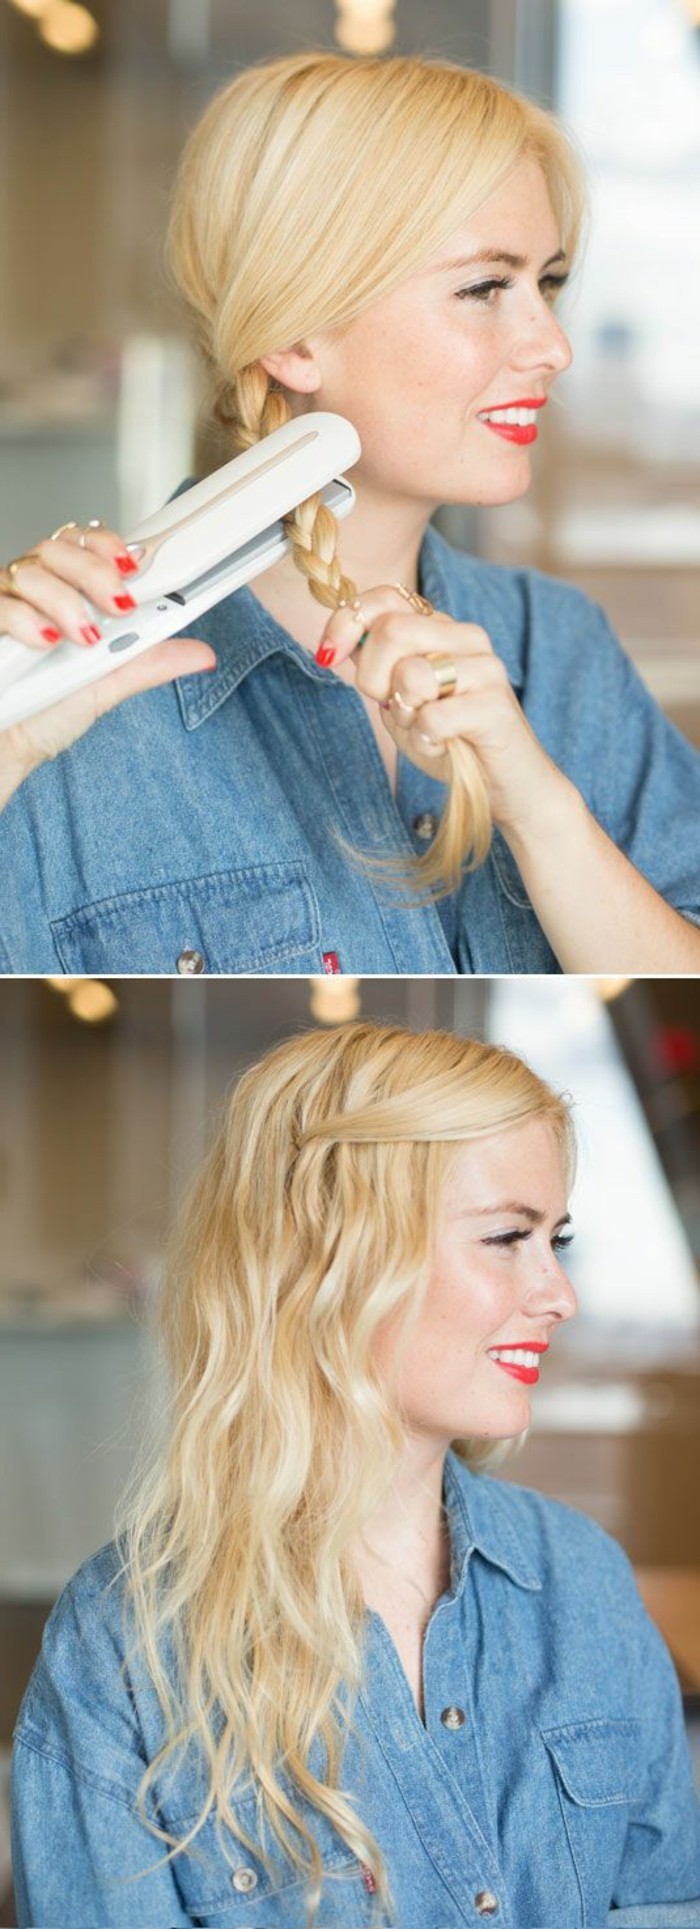 0-comment-faire-facilement-boucles-cheveux-blonds-pour-les-femmes-coiffure-cheveux-attachés